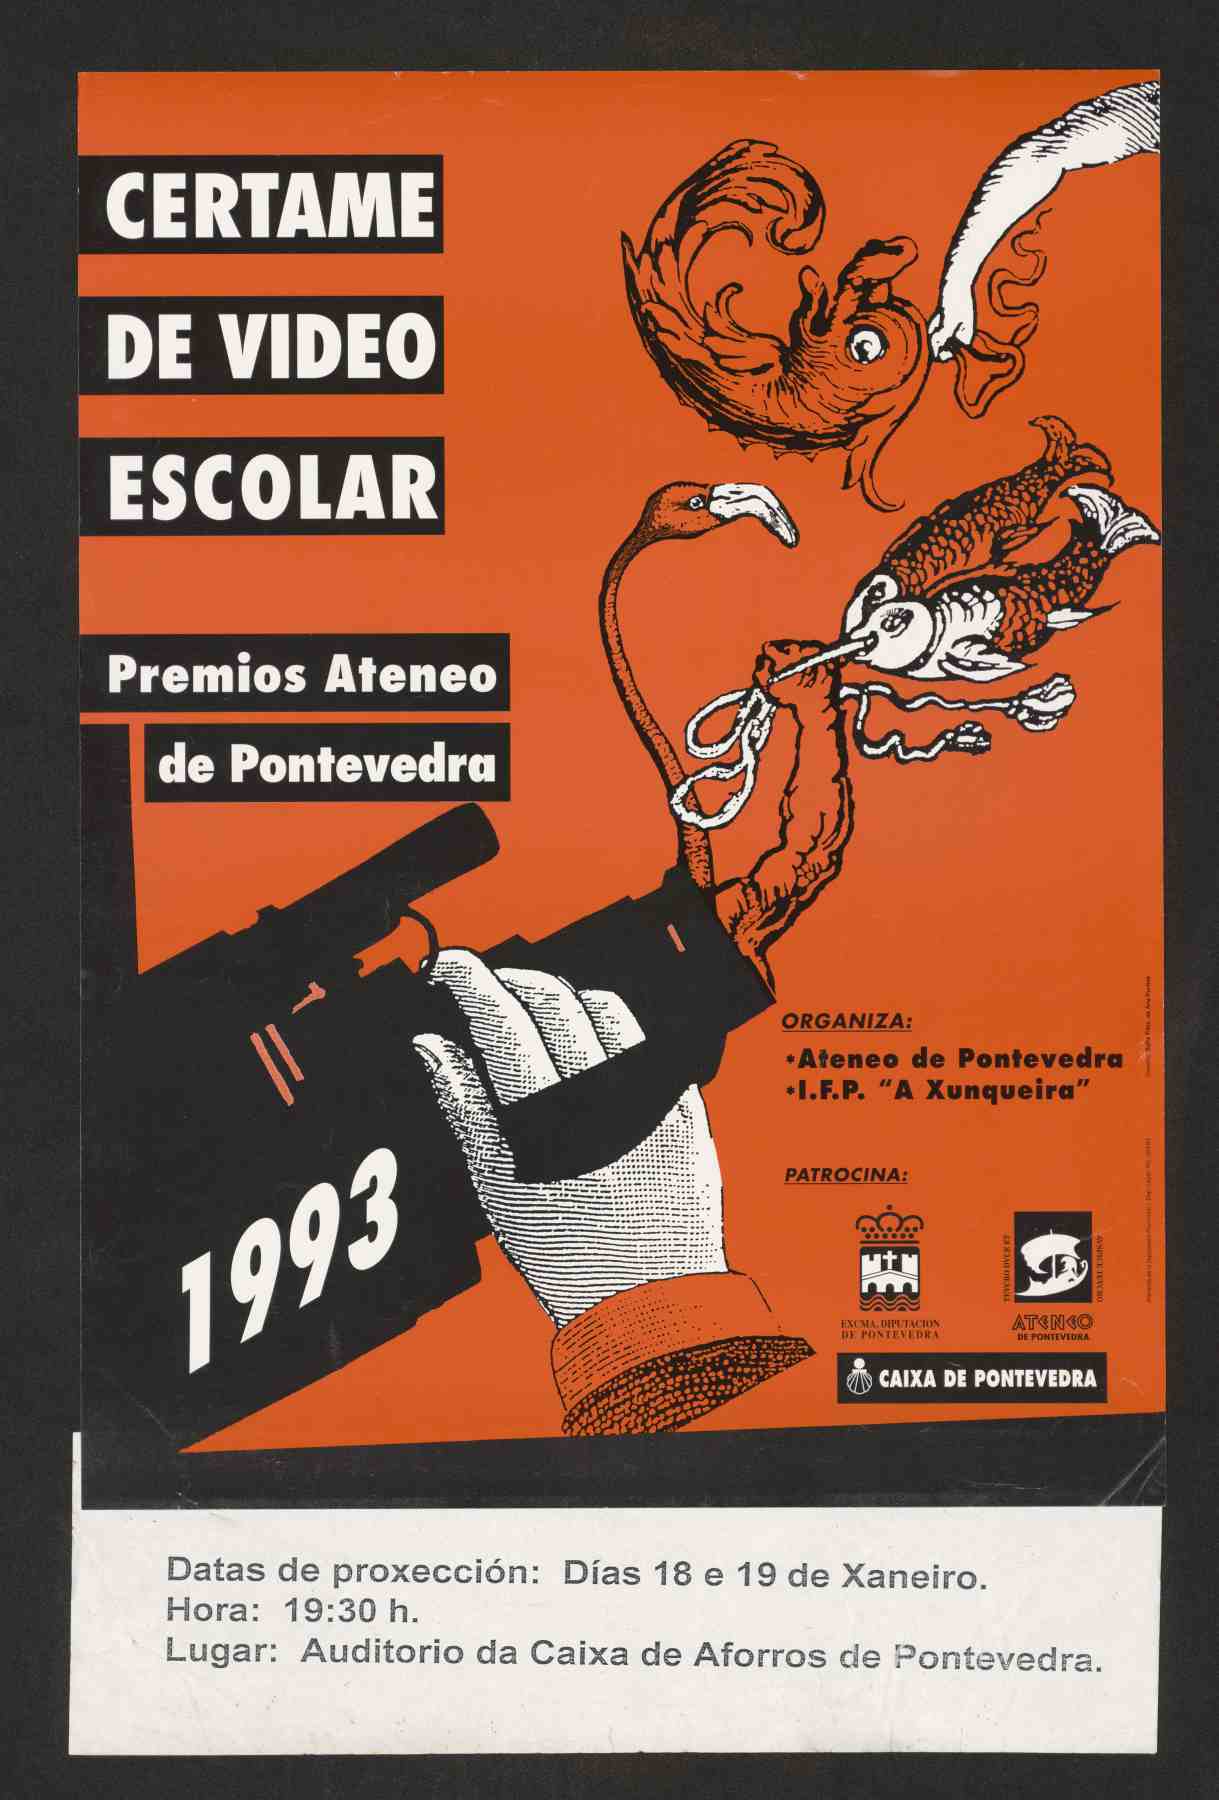 Certame de video escolar do Ateneo de Pontevedra, 1993